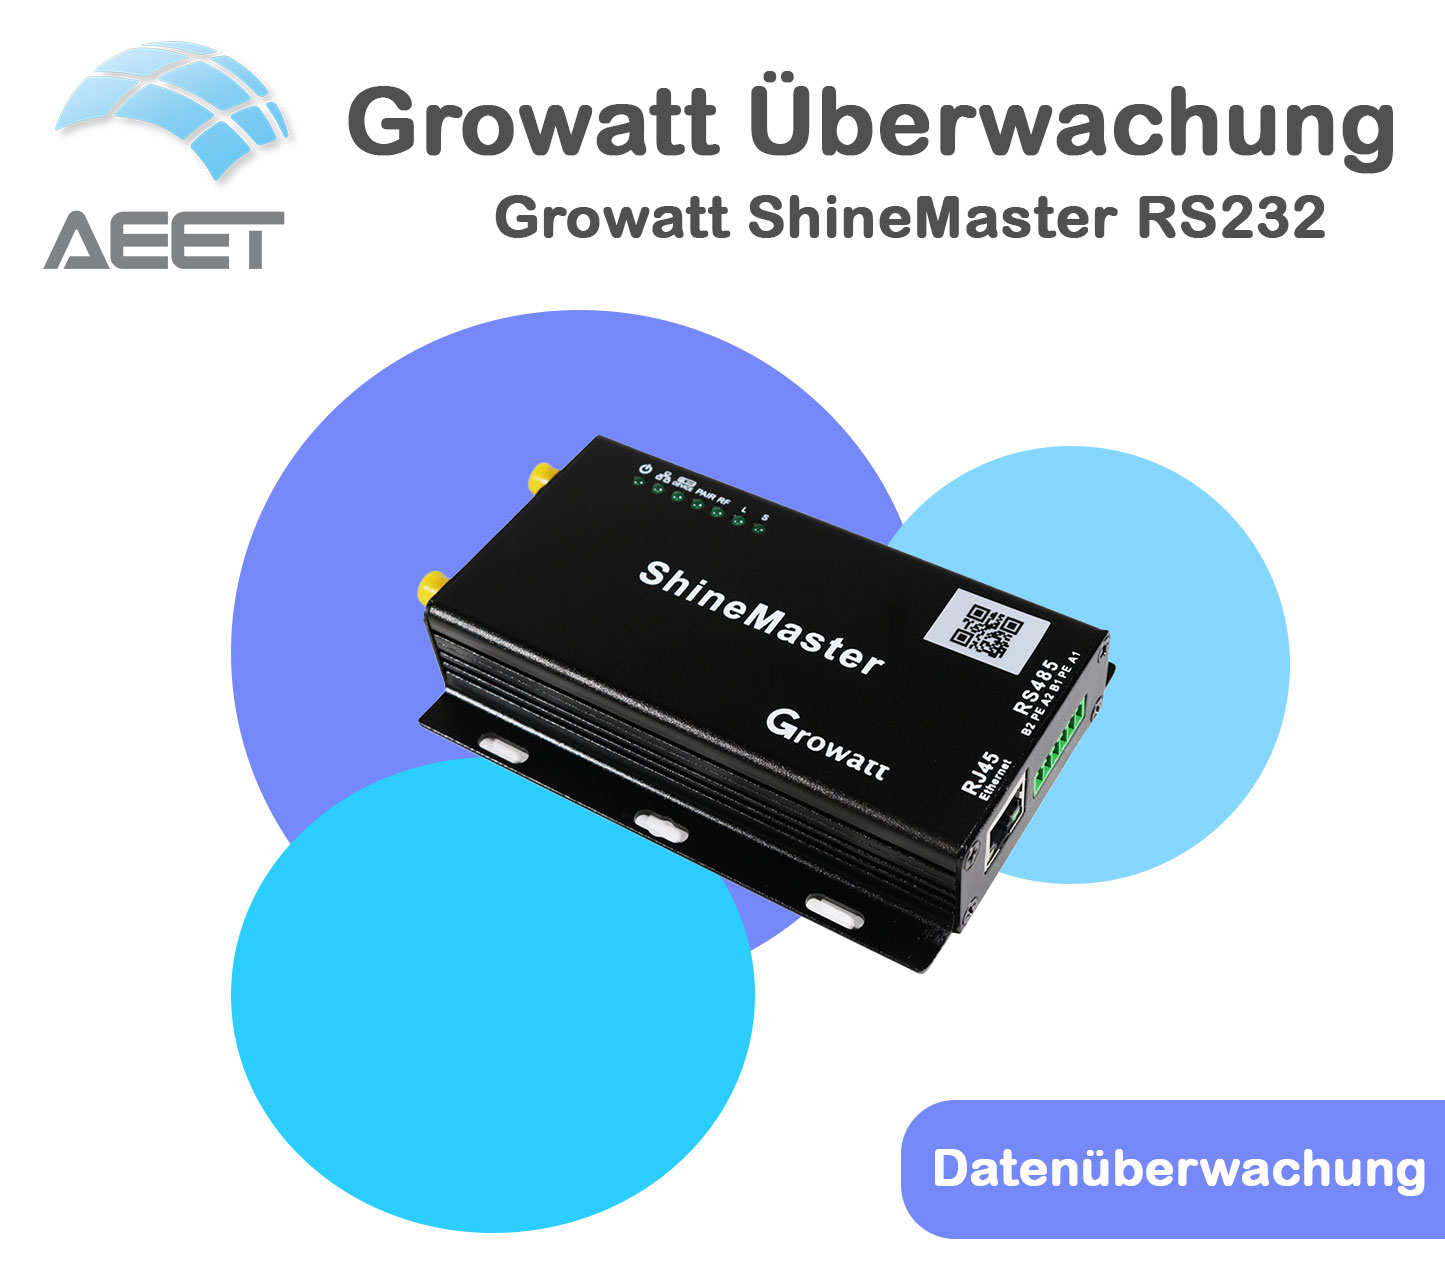 Growatt ShineMaster RS232 - Datenüberwachung